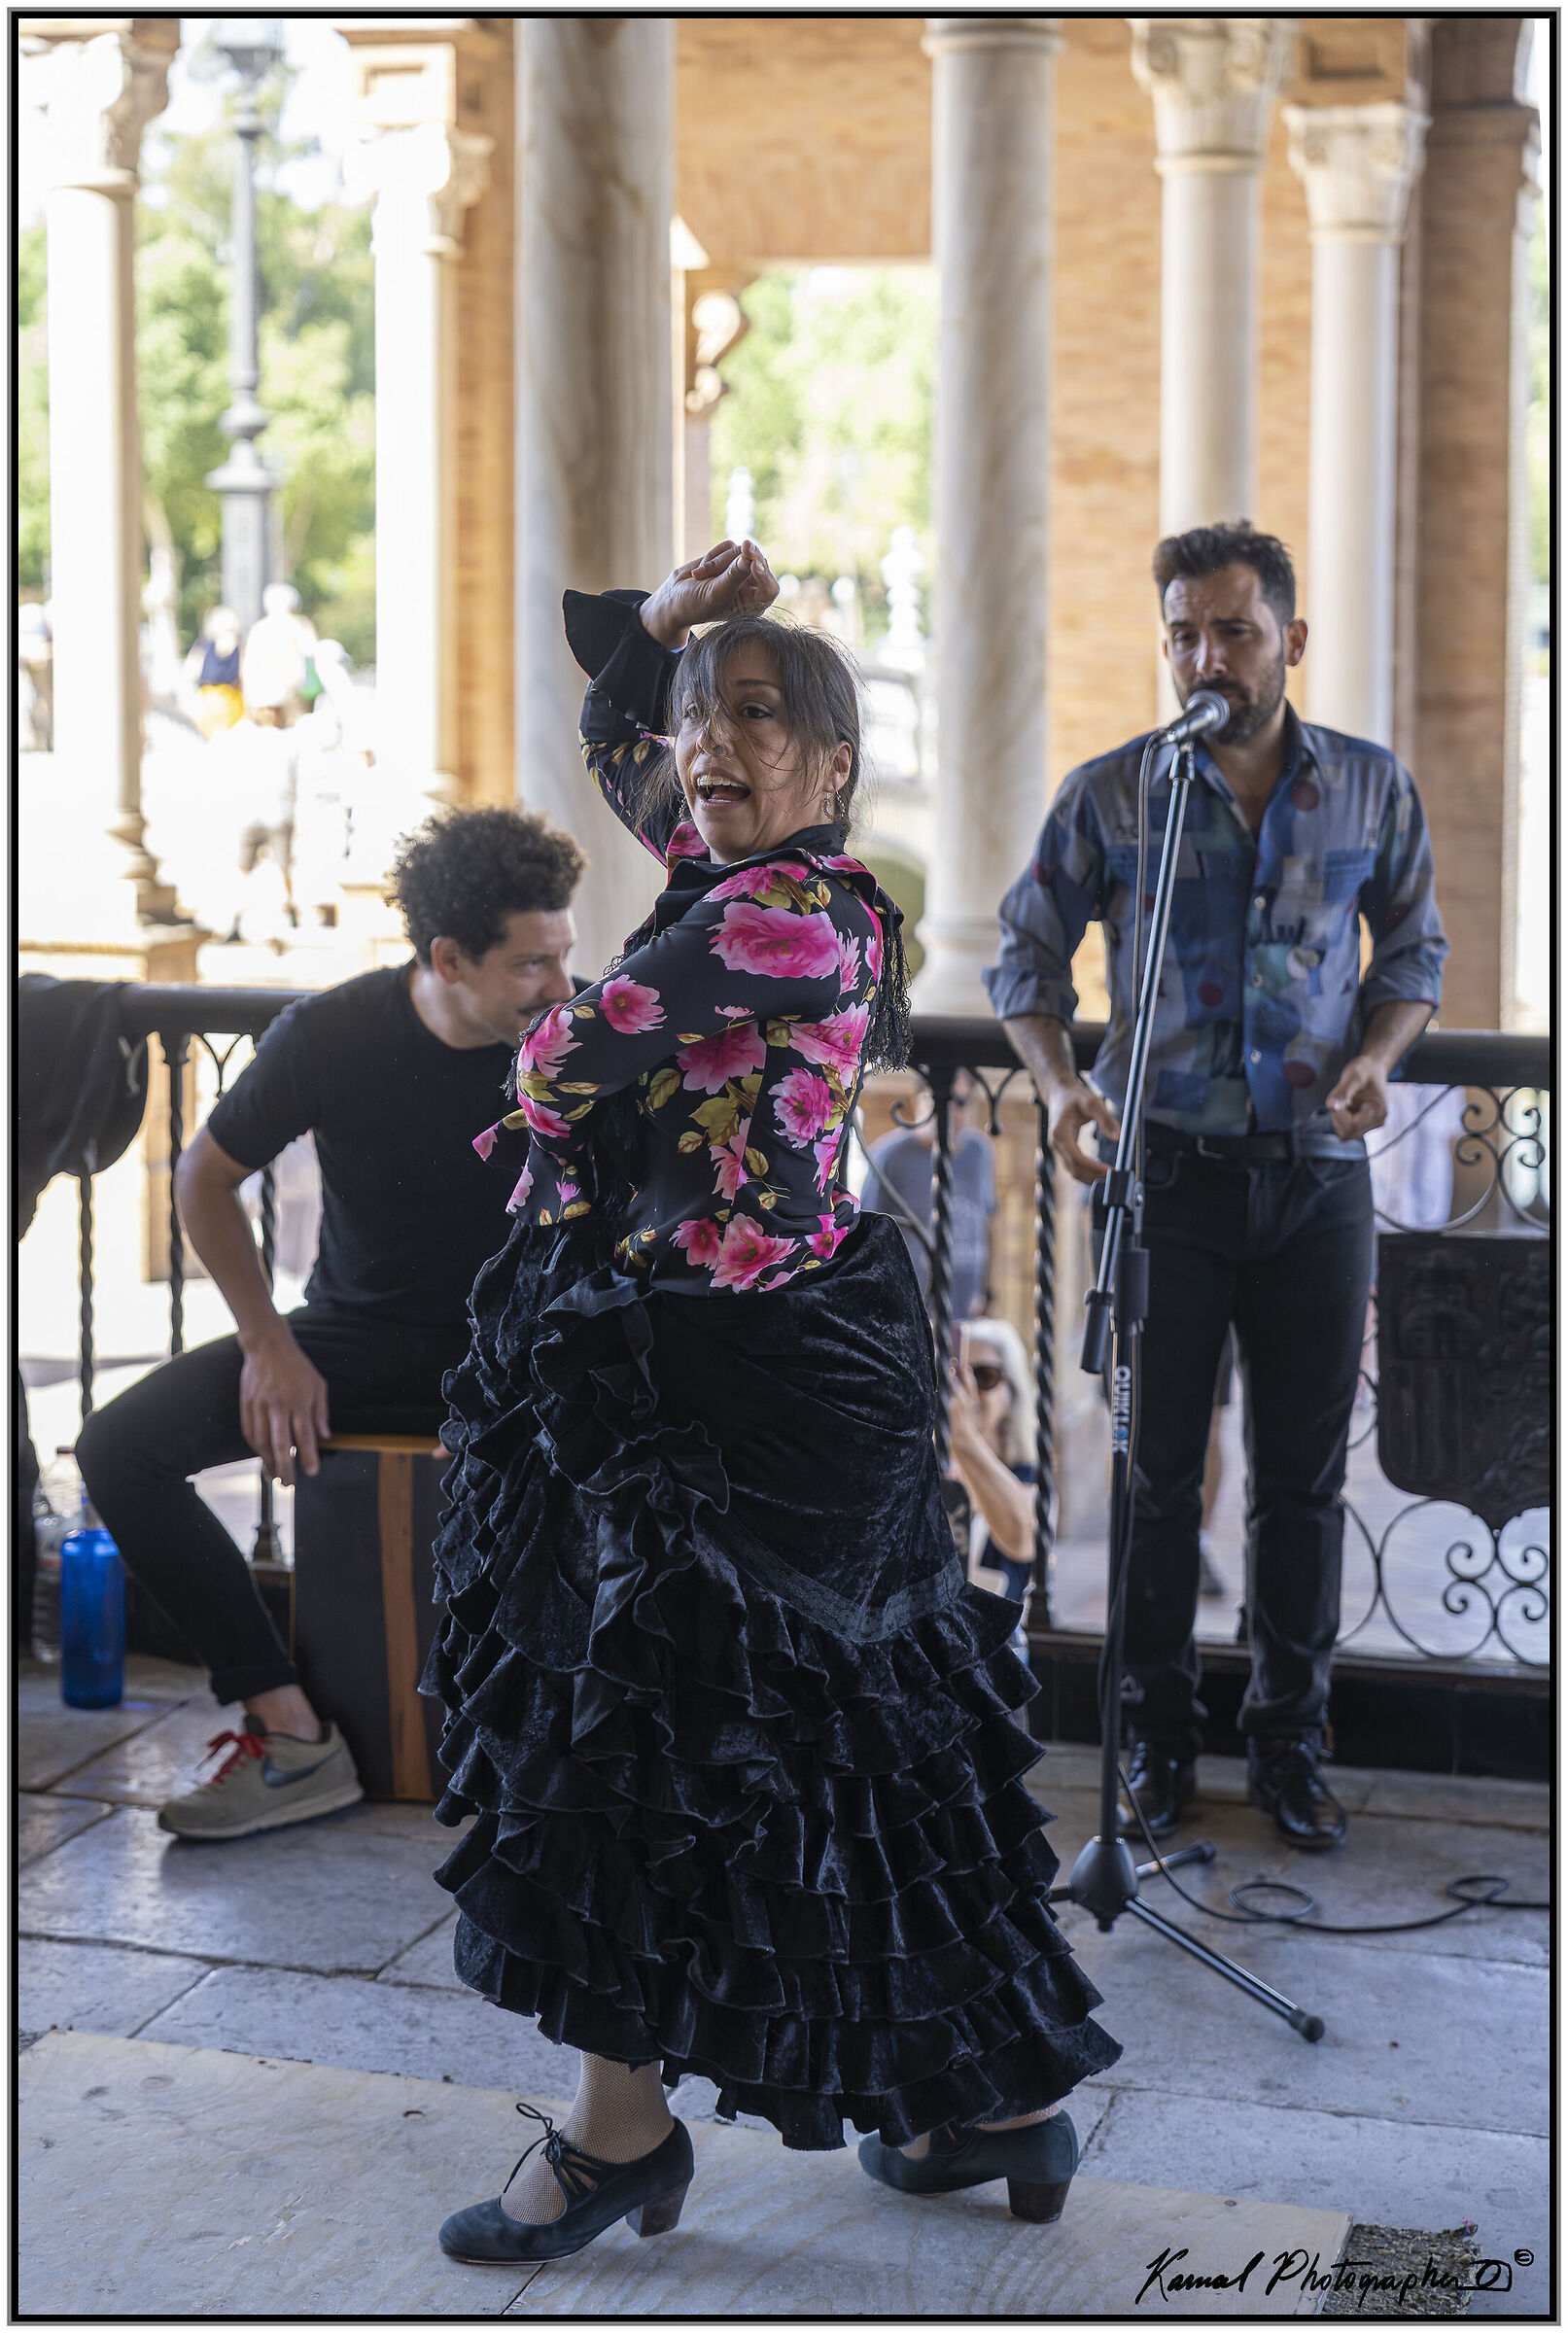 Plaza de España Seville Flamenco dancer...